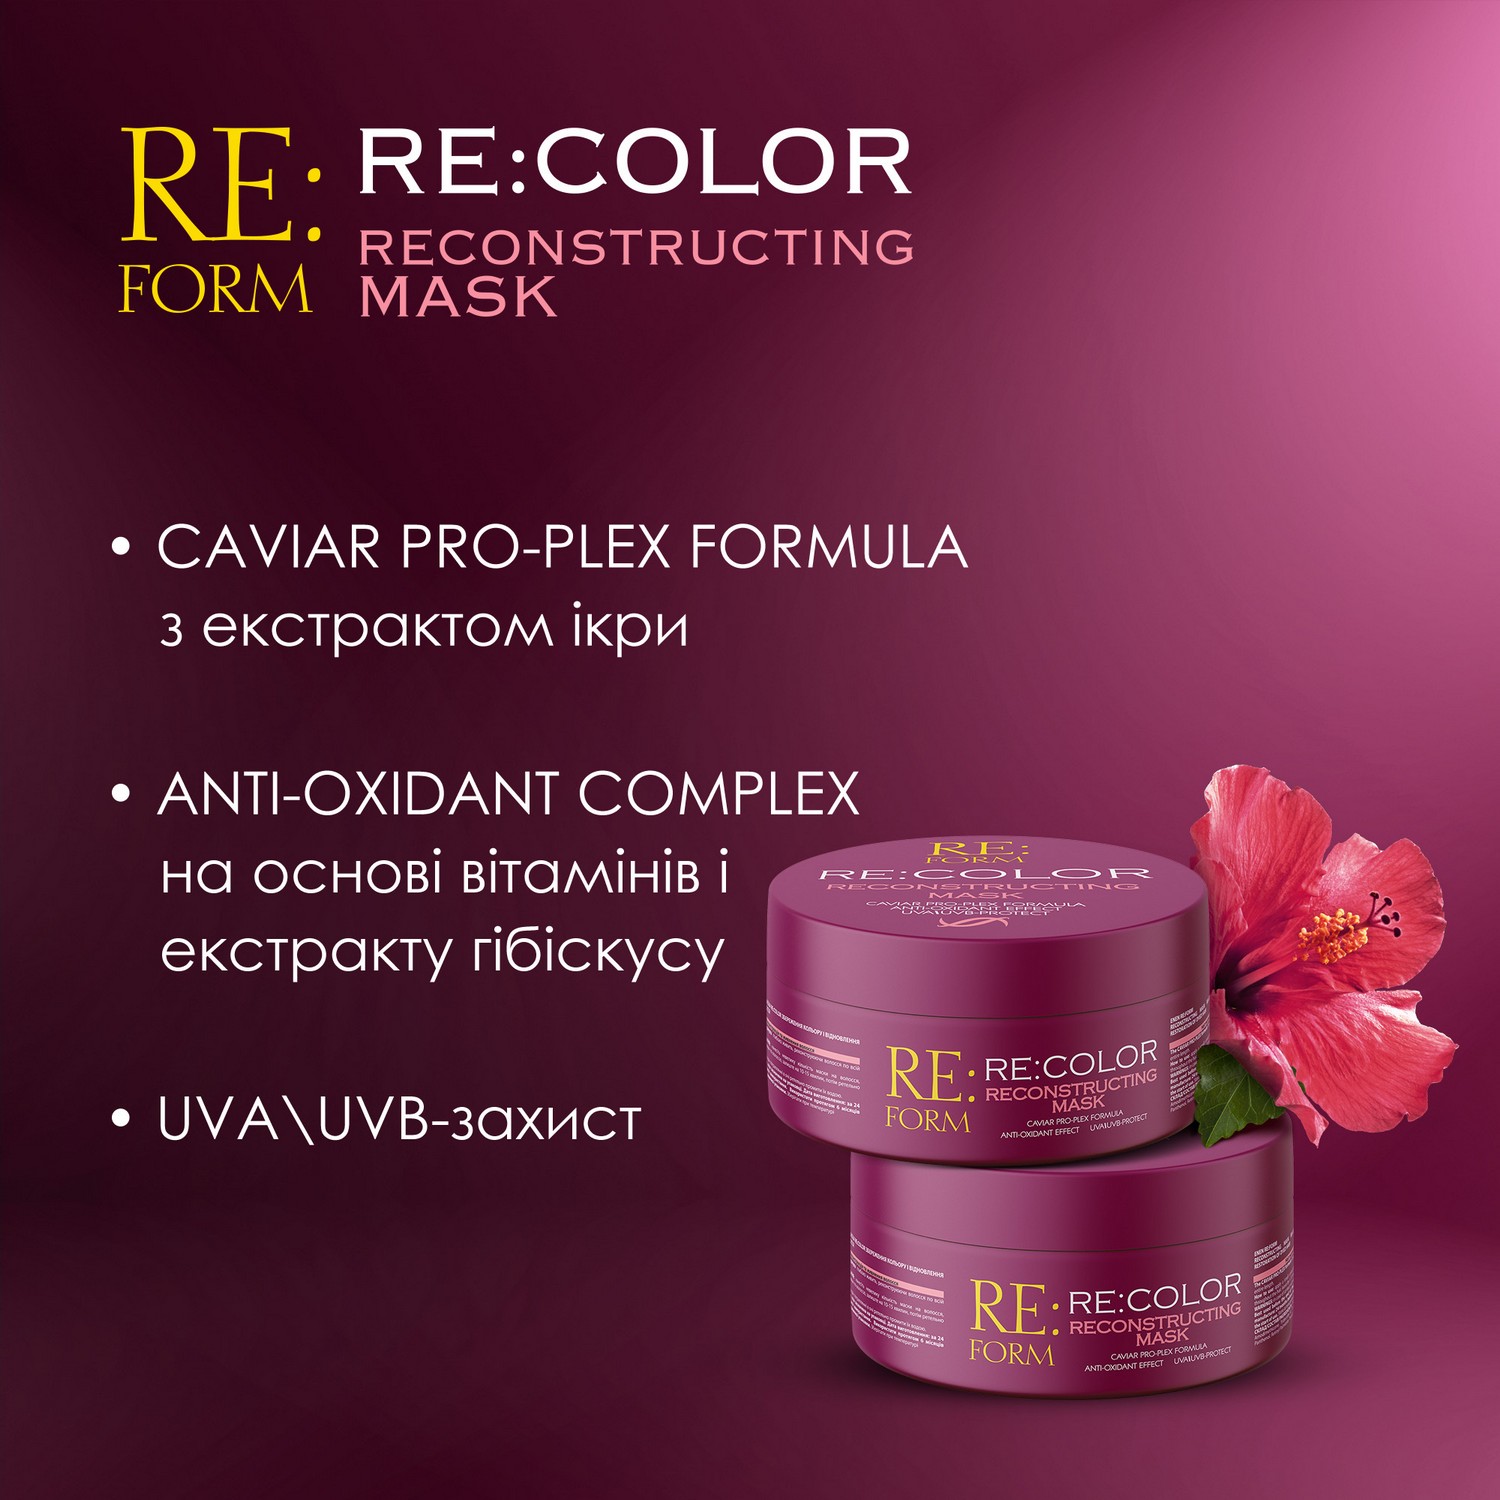 Реконструююча маска Re:form Re:color Збереження кольору і відновлення фарбованого волосся, 230 мл - фото 5